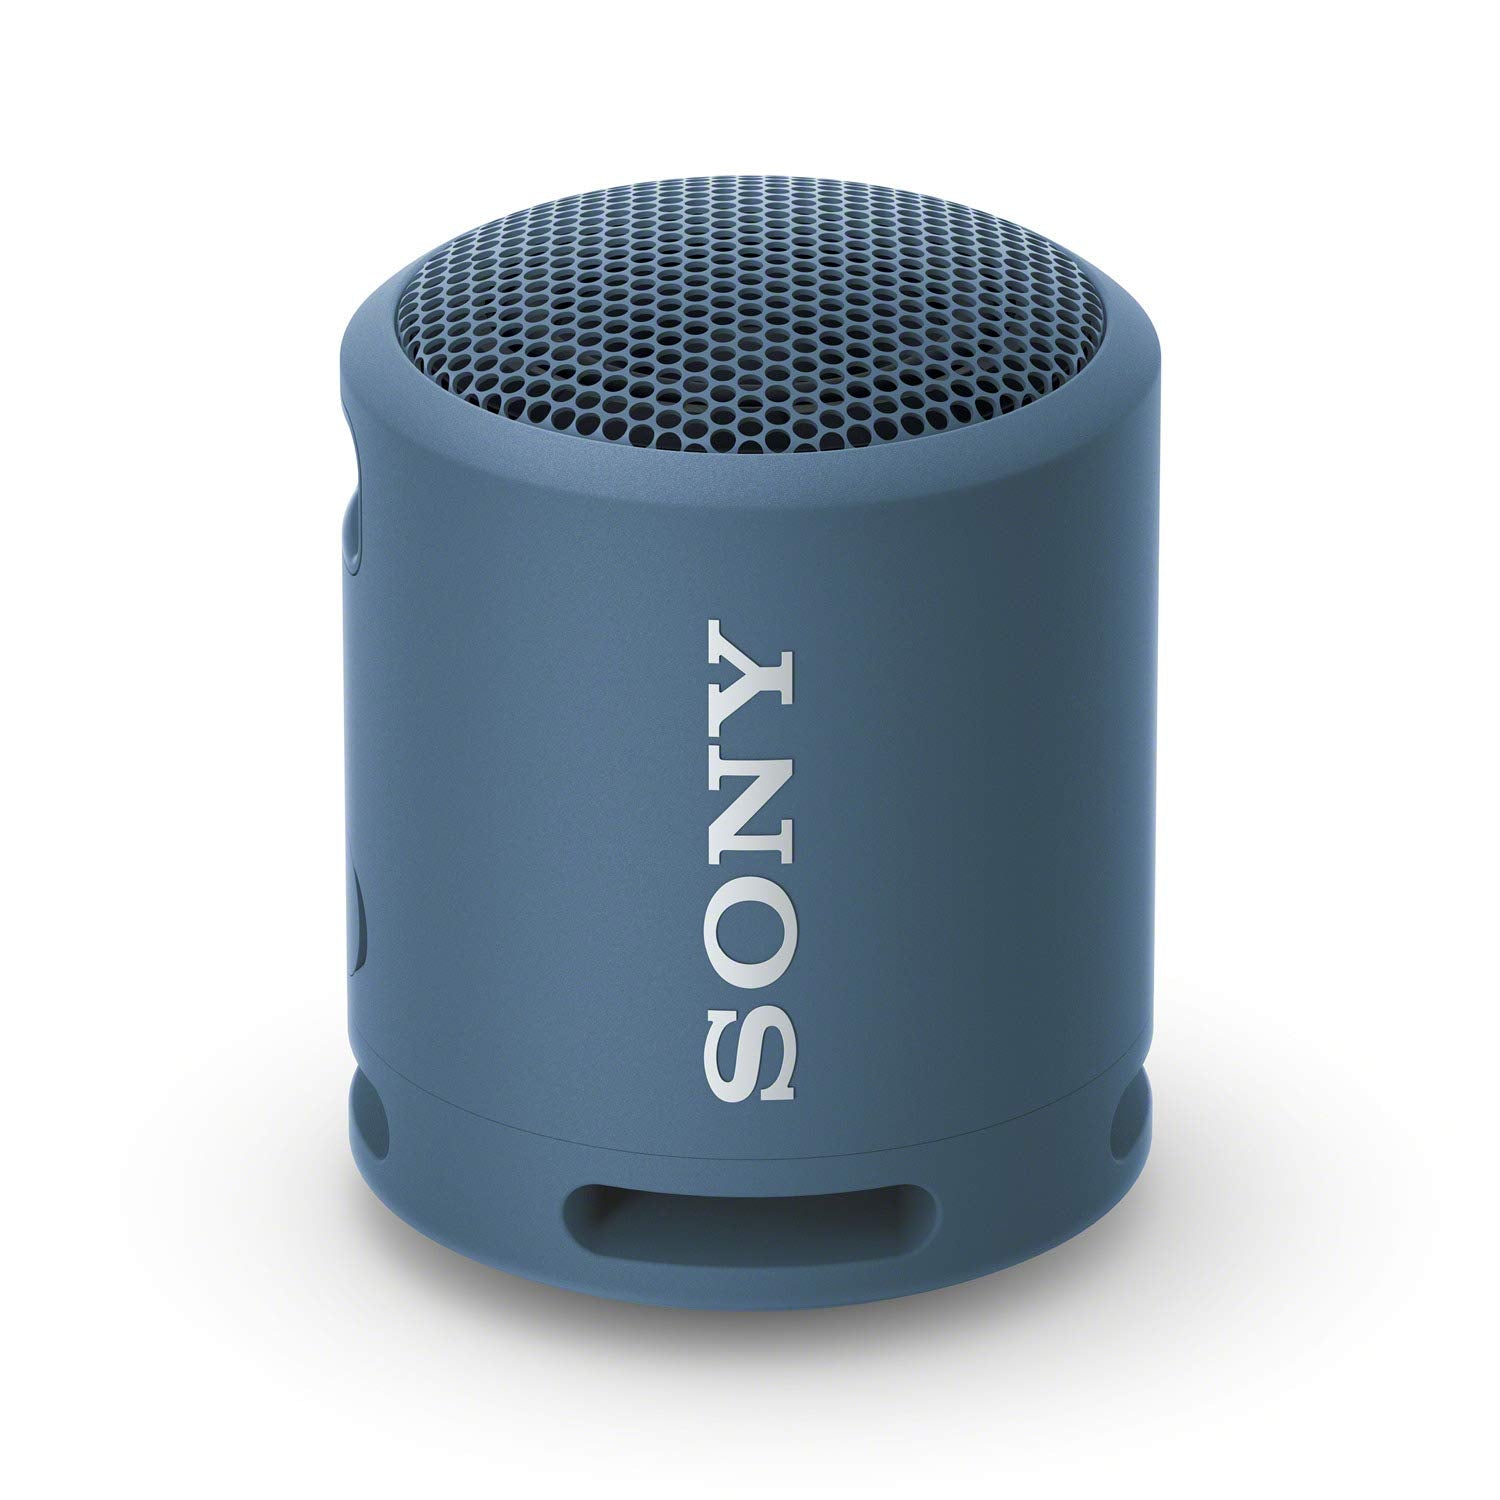 Sony Altavoz bluetooth portátil con sonido amplio, resistente al